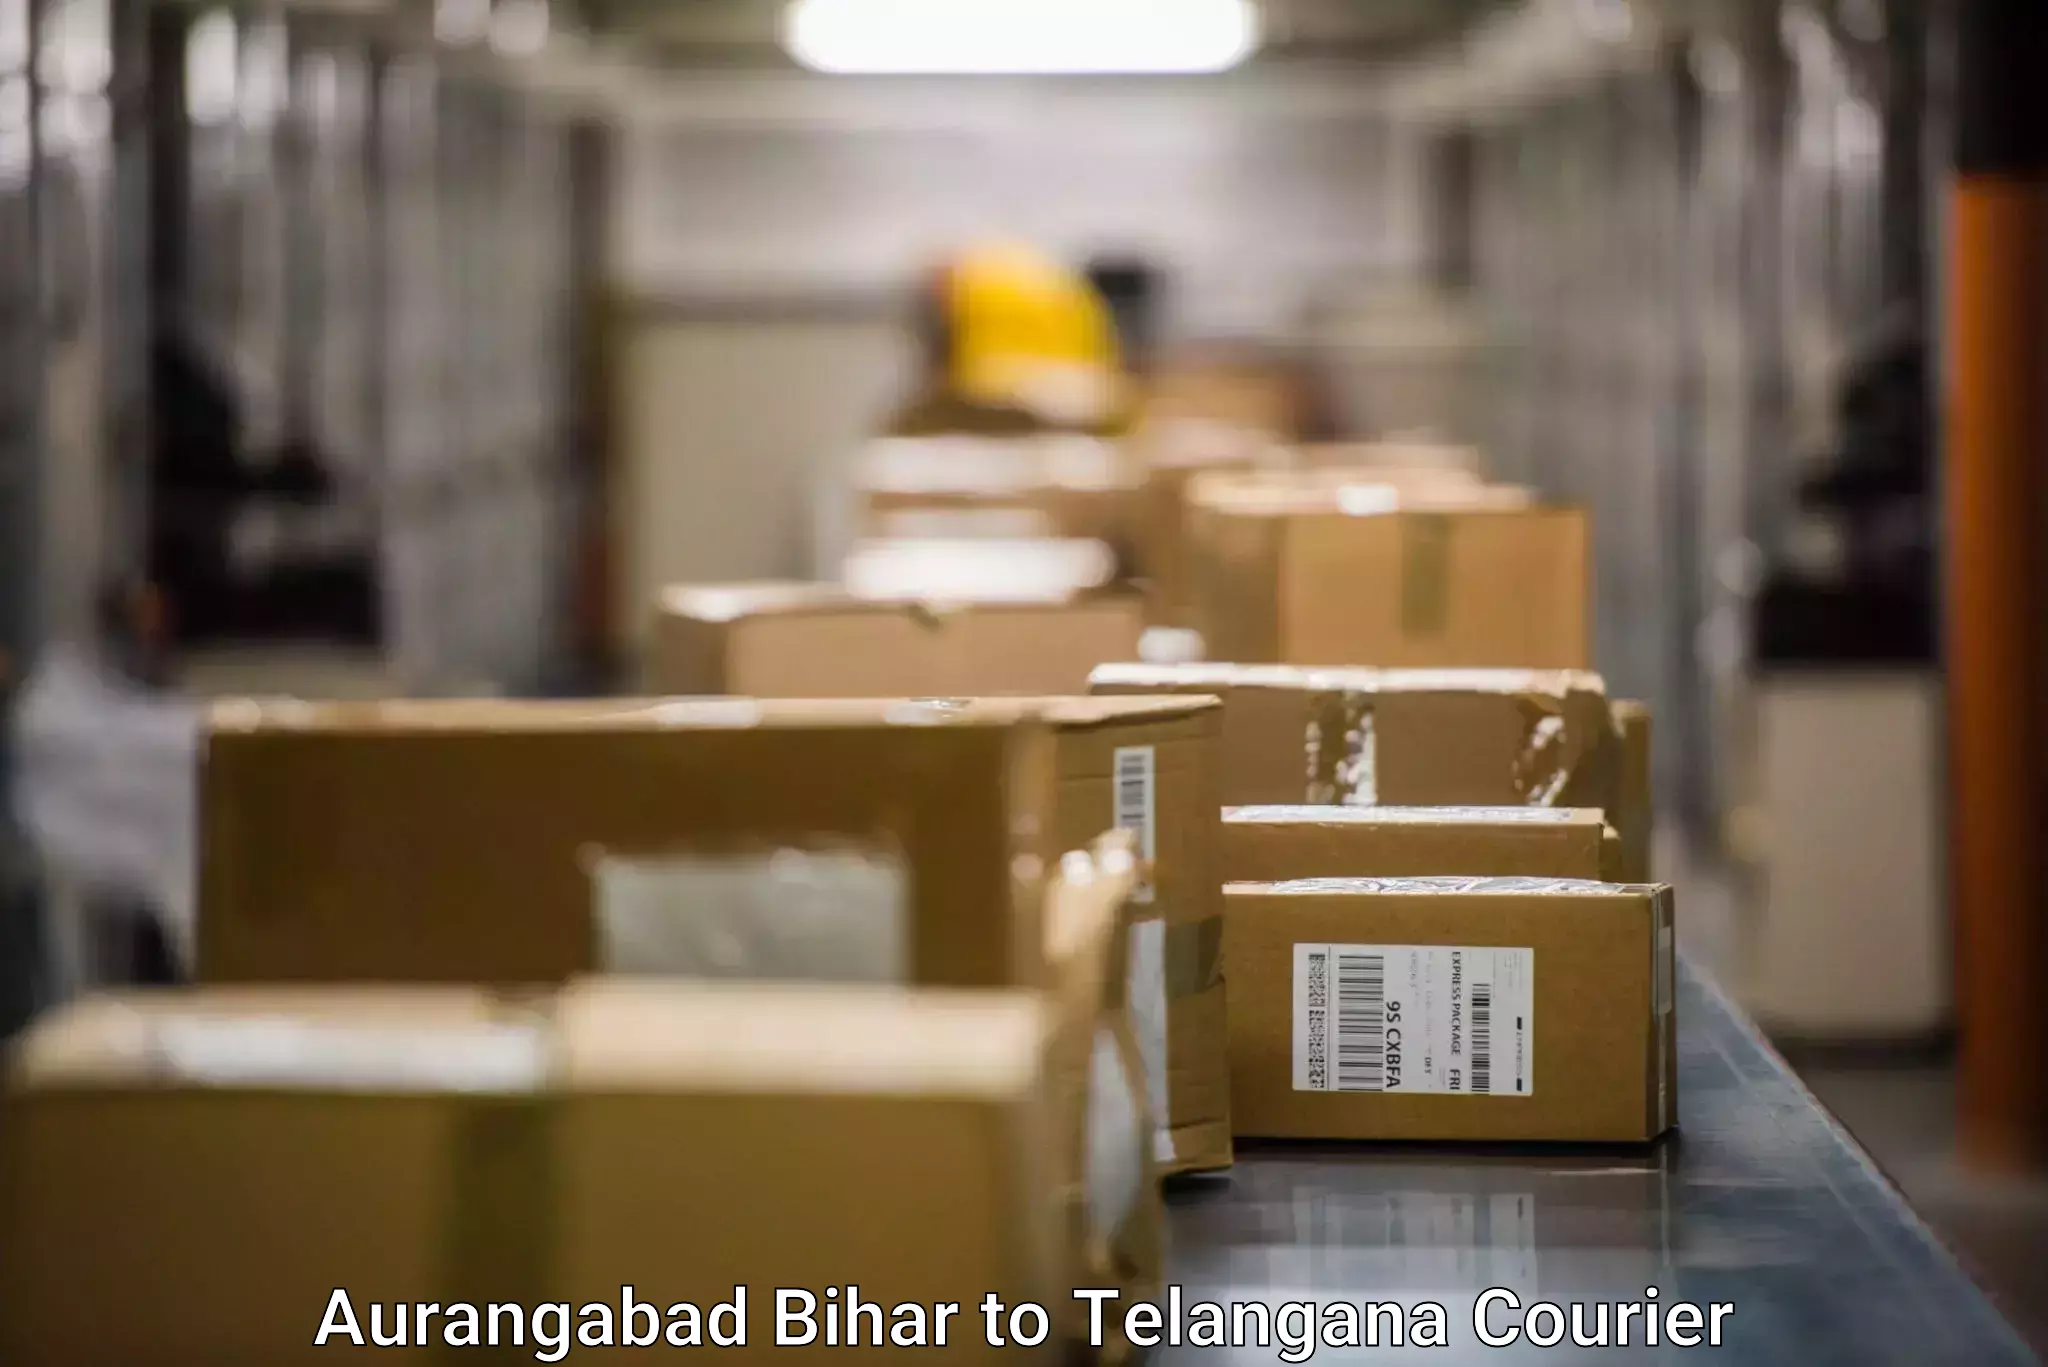 Personal parcel delivery Aurangabad Bihar to Zahirabad